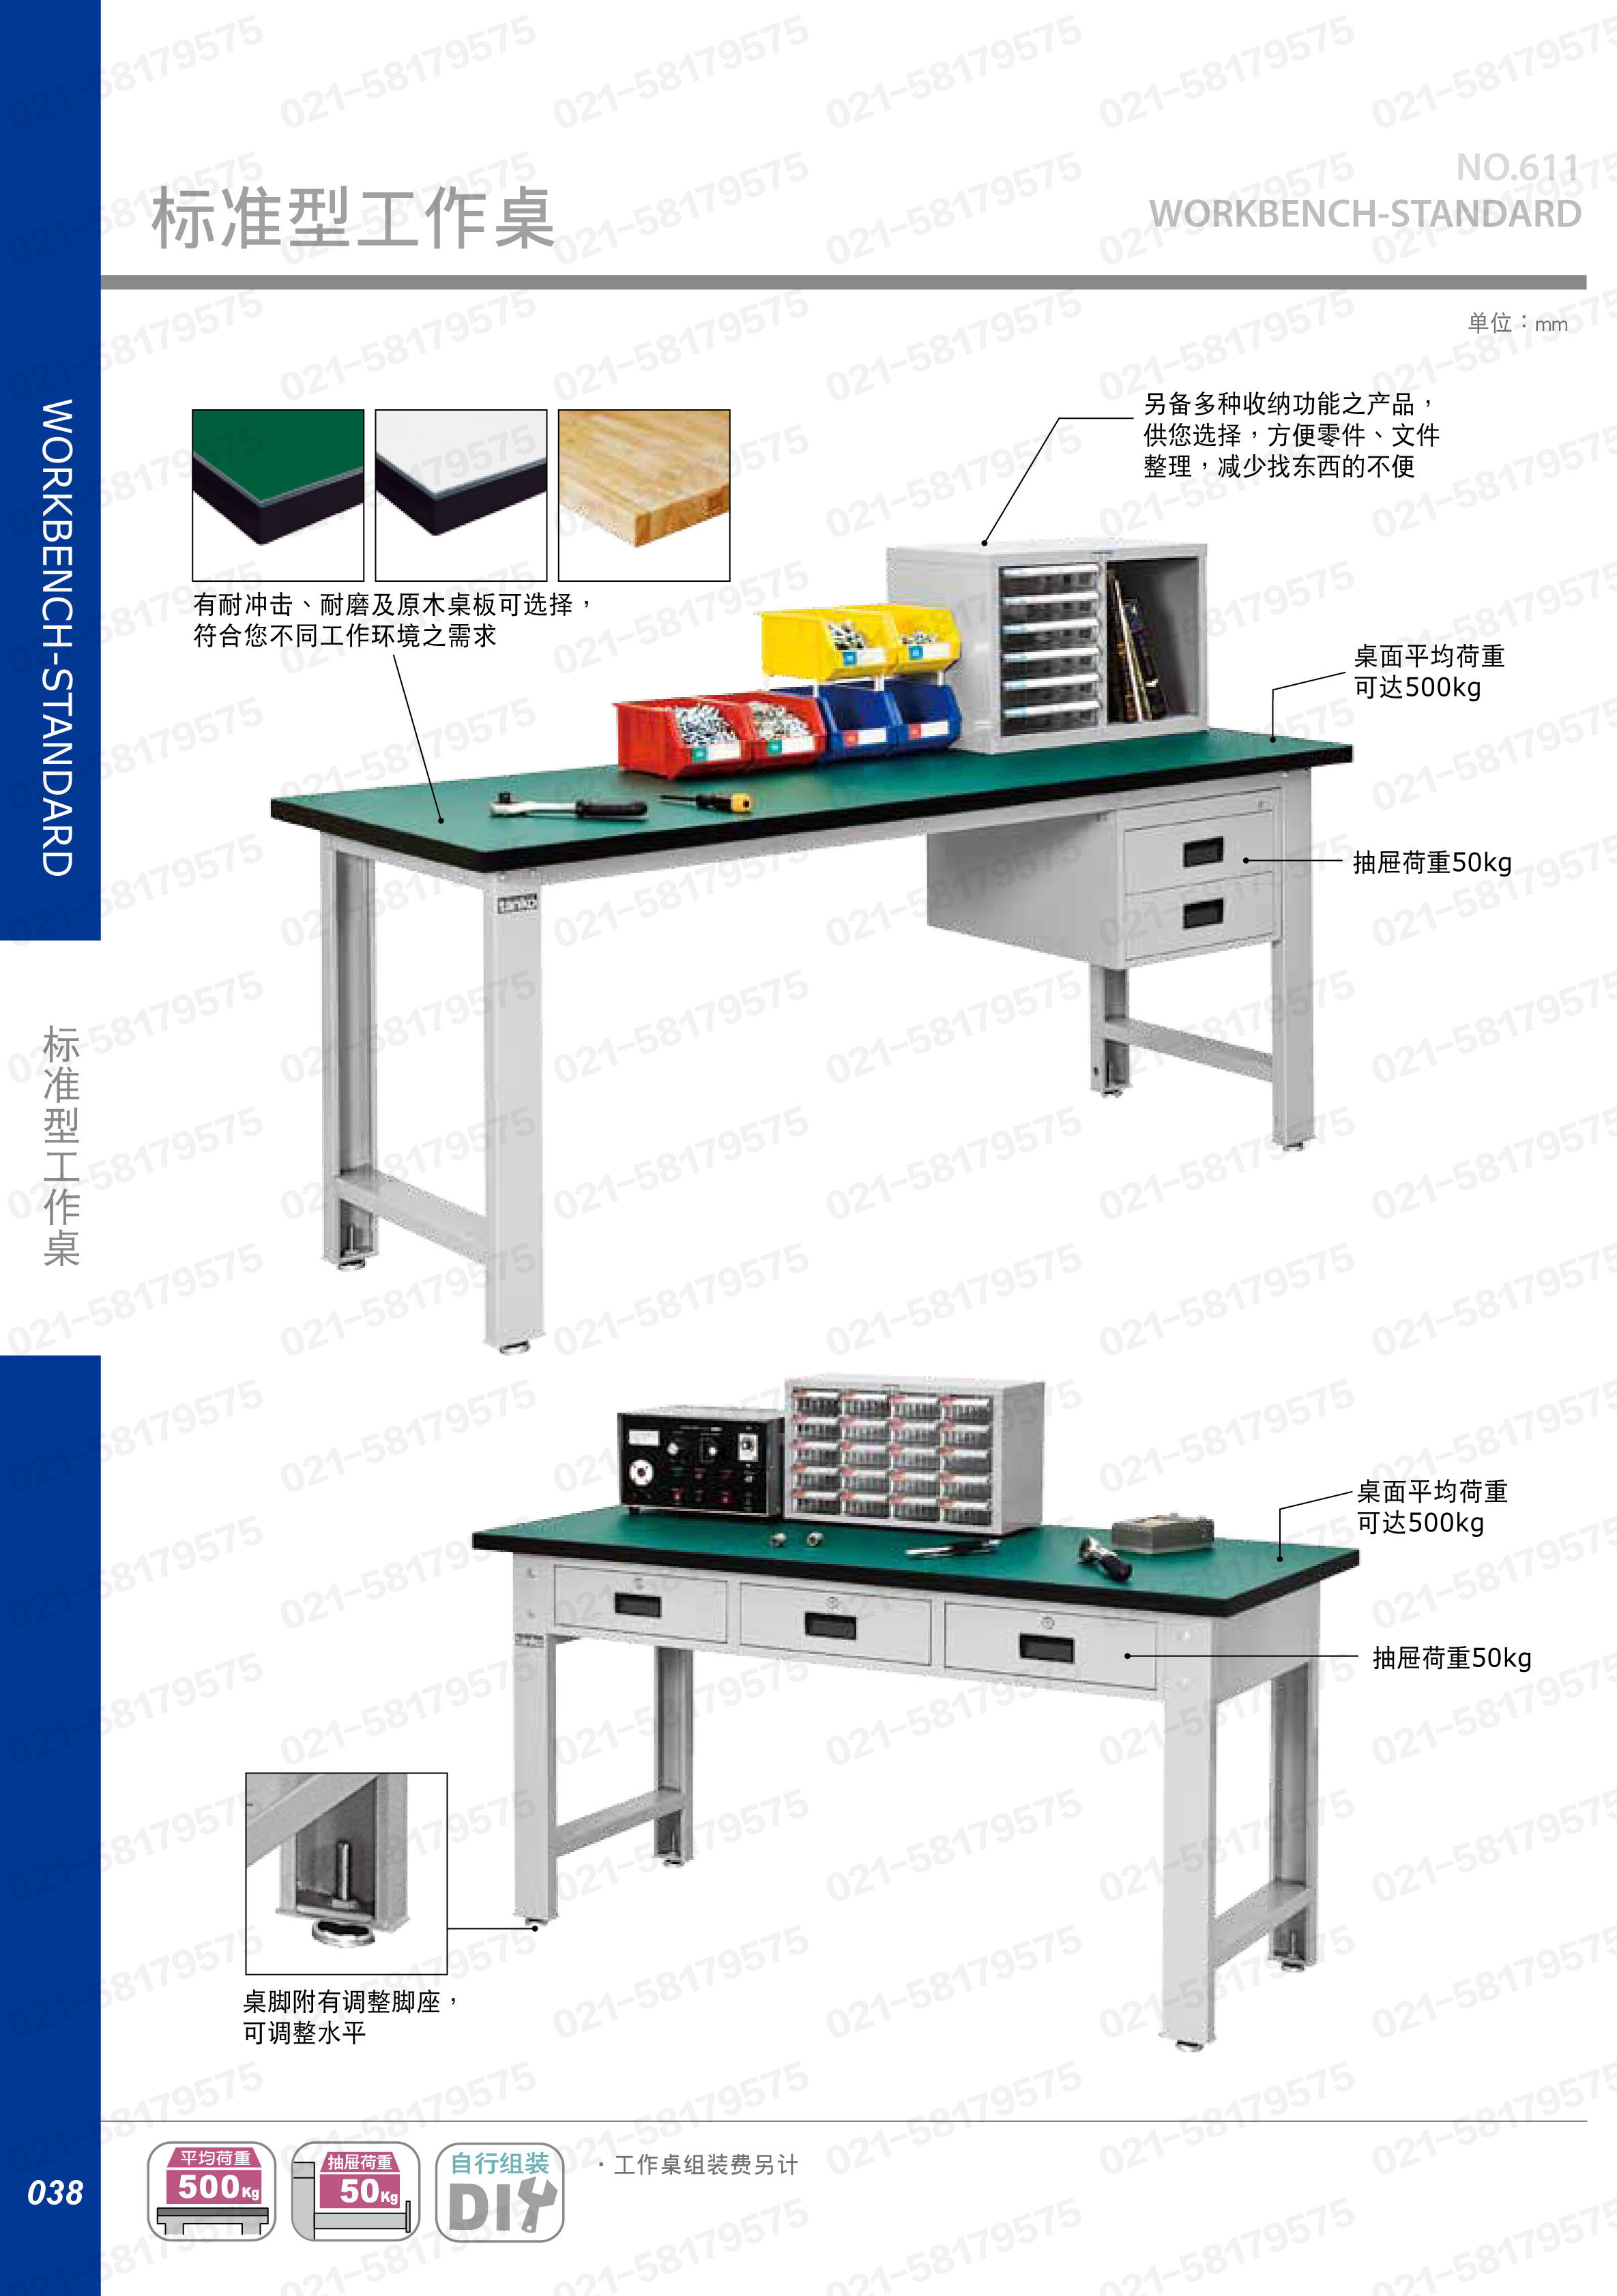 轻型工作桌1500×750×800mm 耐冲击桌板 带四抽边柜,WBS-57041N,5D2946